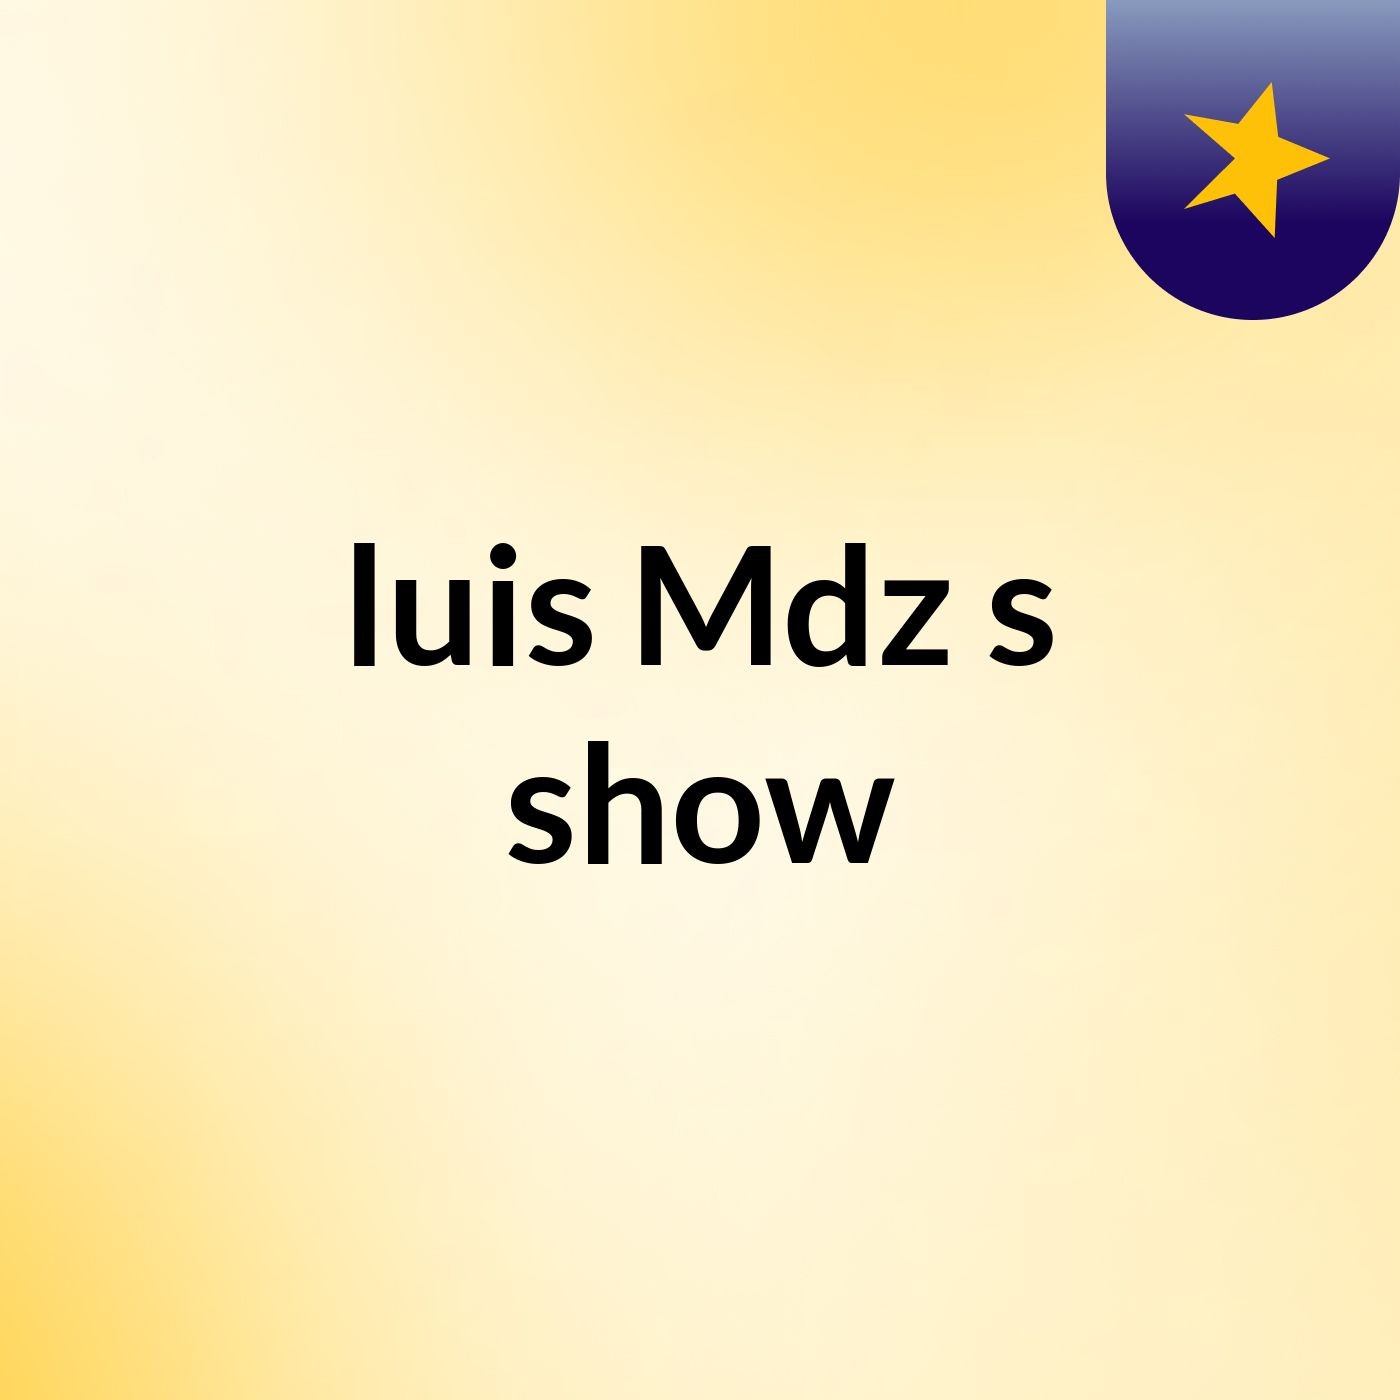 luis Mdz's show